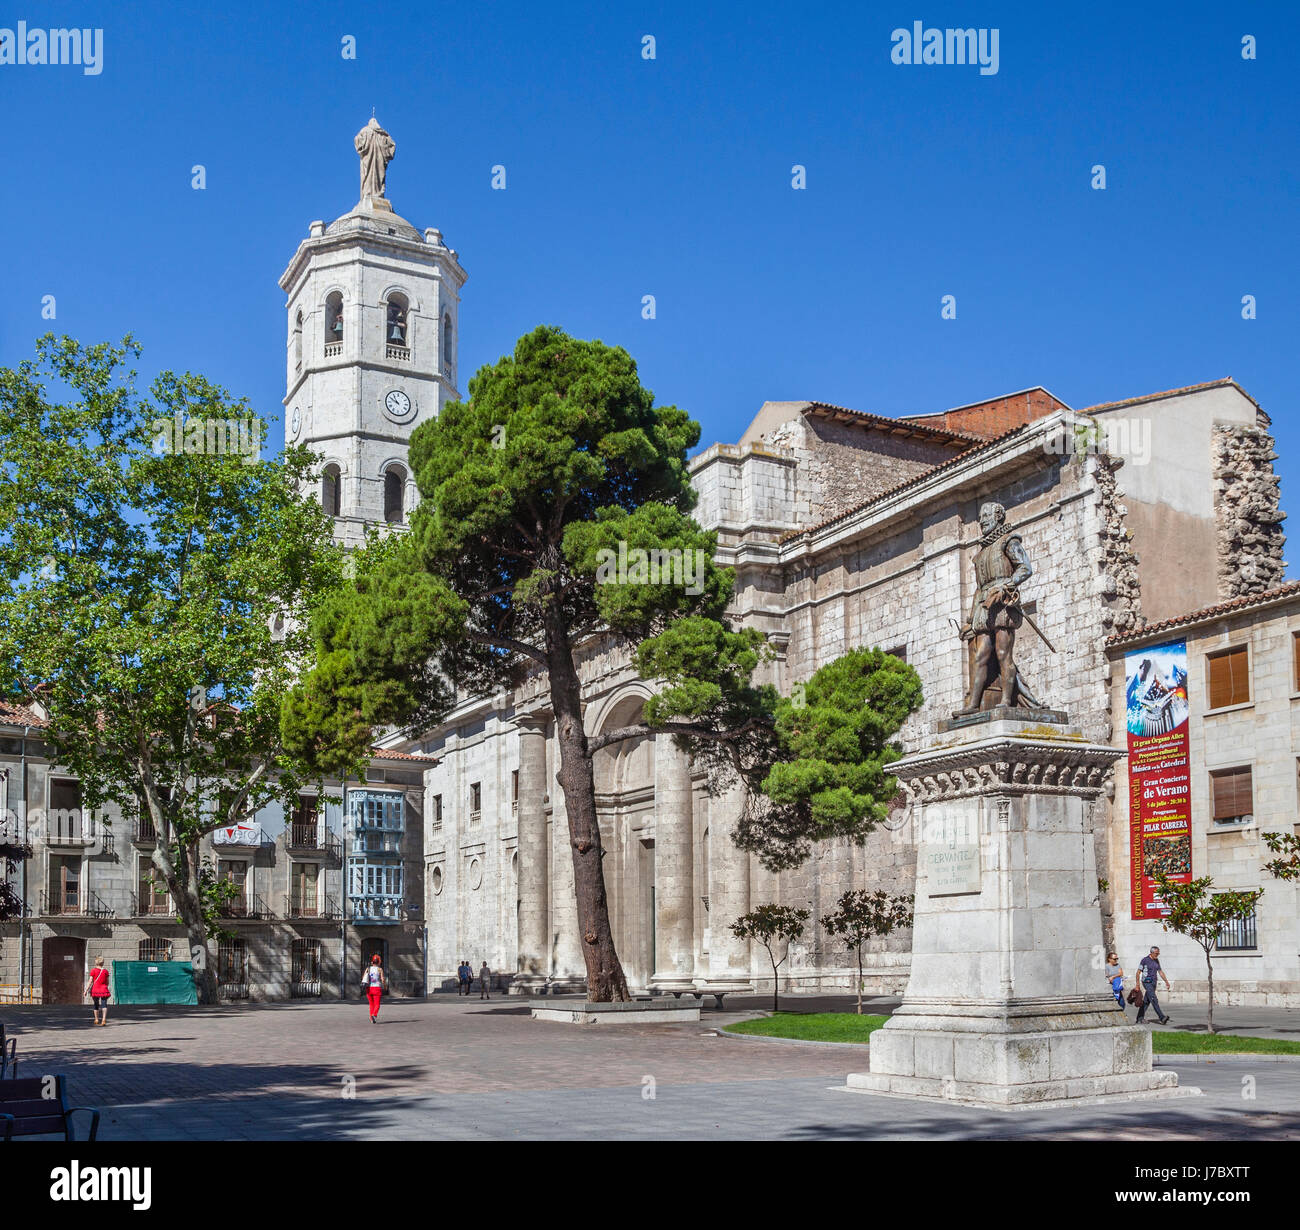 L'Espagne, Castille et León, Valladolid, Plaza de la Universidad avec Cervantes und memorial vue de la partie inachevée de la cathédrale de Valladolid Banque D'Images